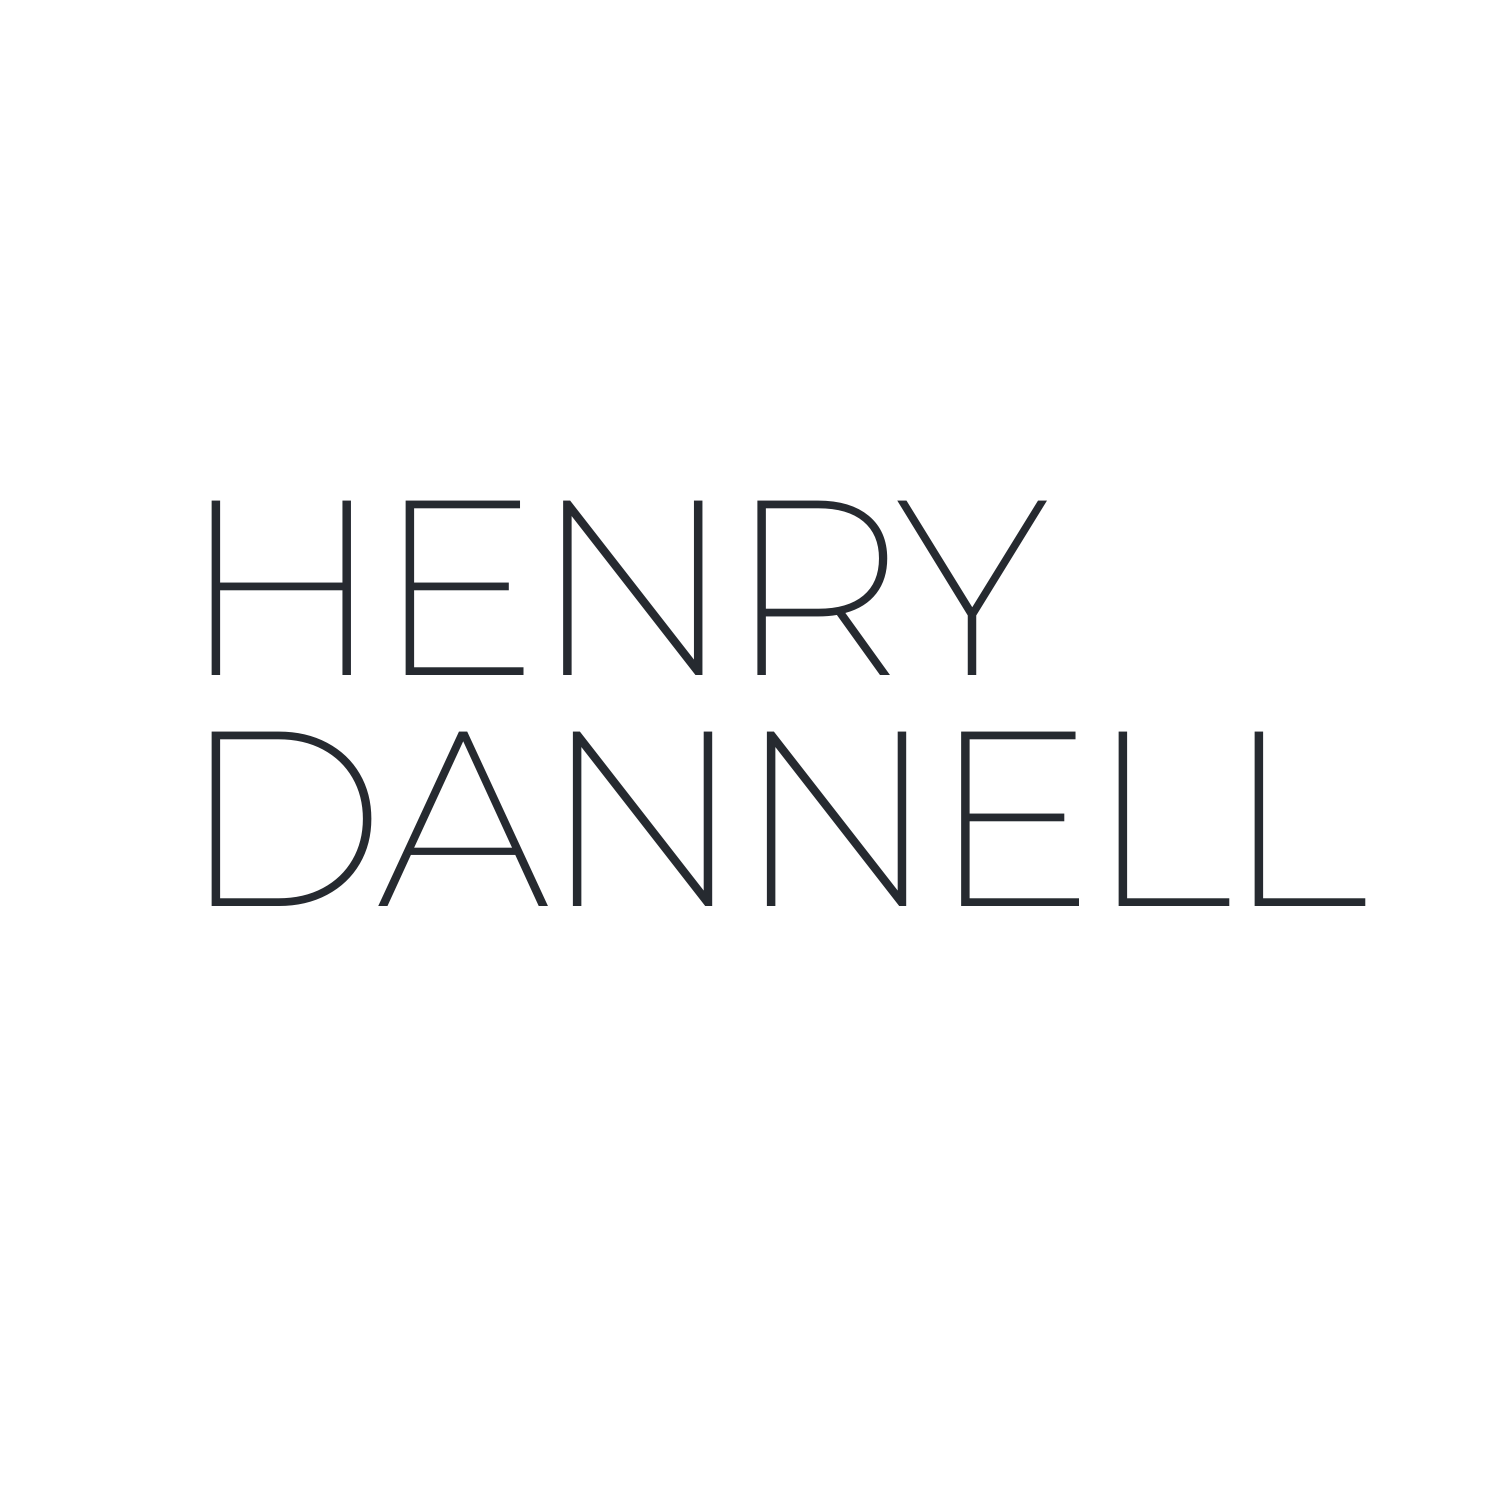 HENRY DANNELL (Dark)